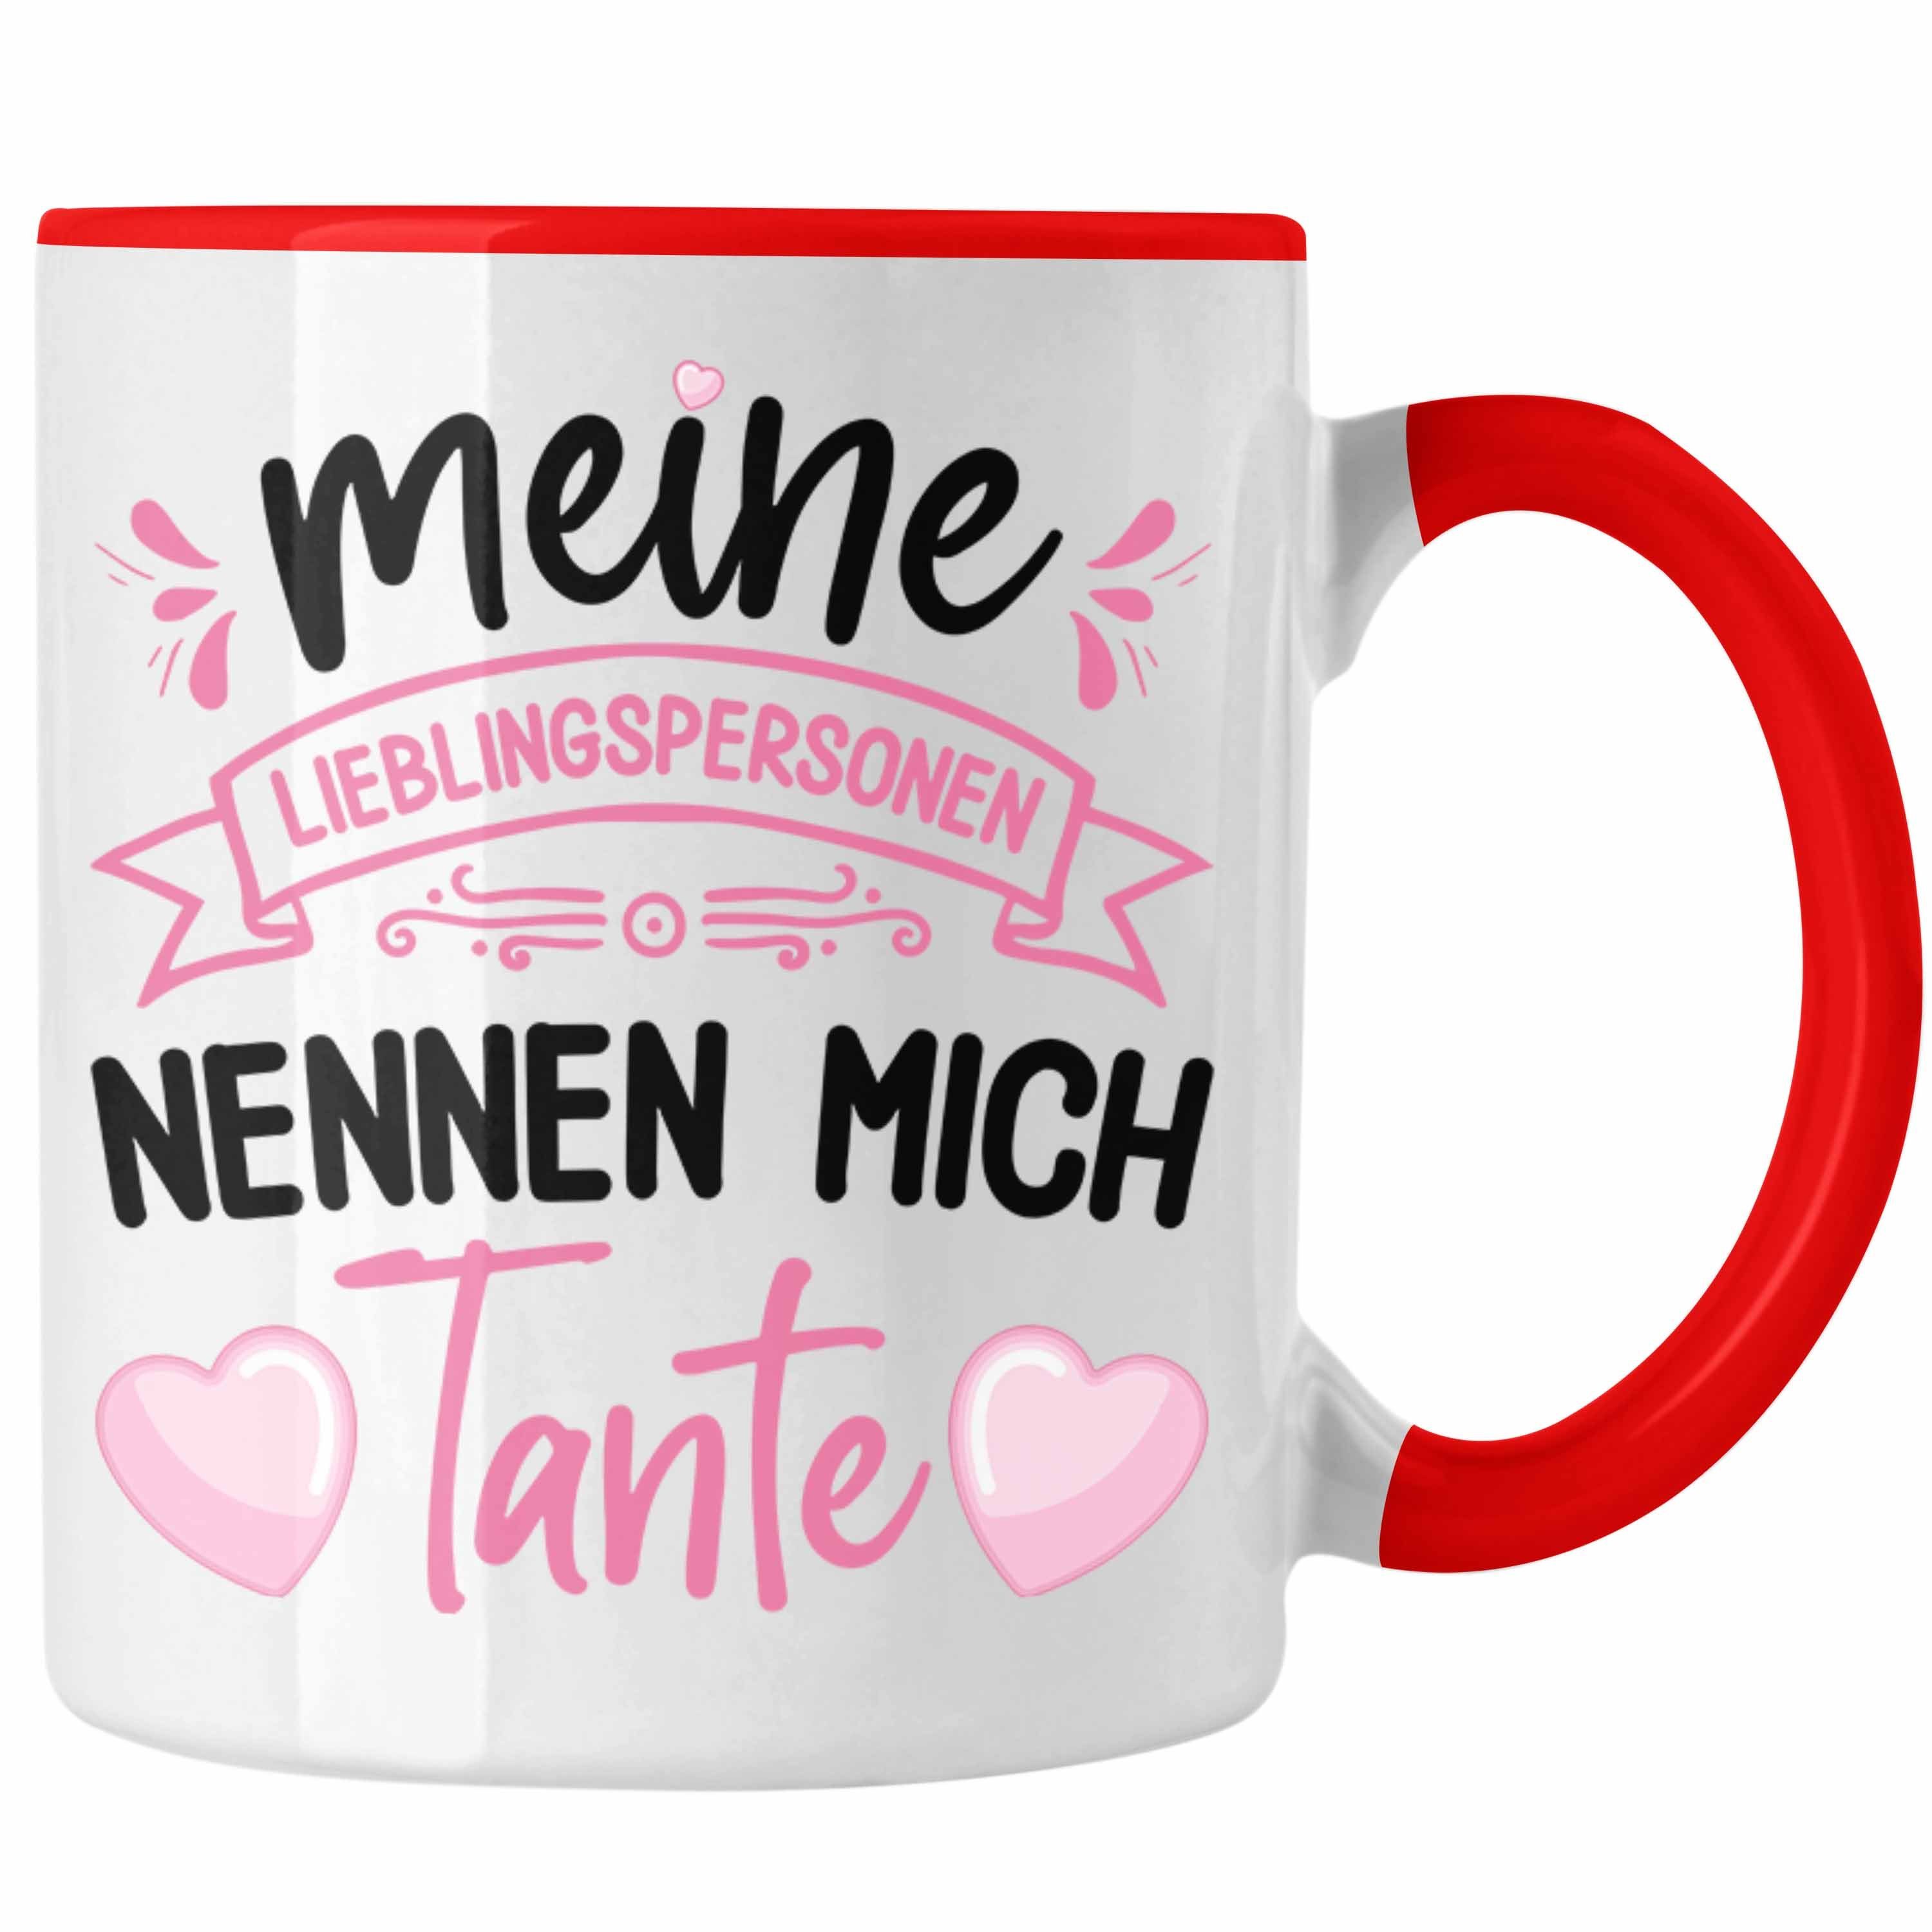 Trendation Tasse Trendation - Tante Geschenk Tasse Spruch Lustig Geschenkidee für Tante Geburtstag Weihnachten Rot